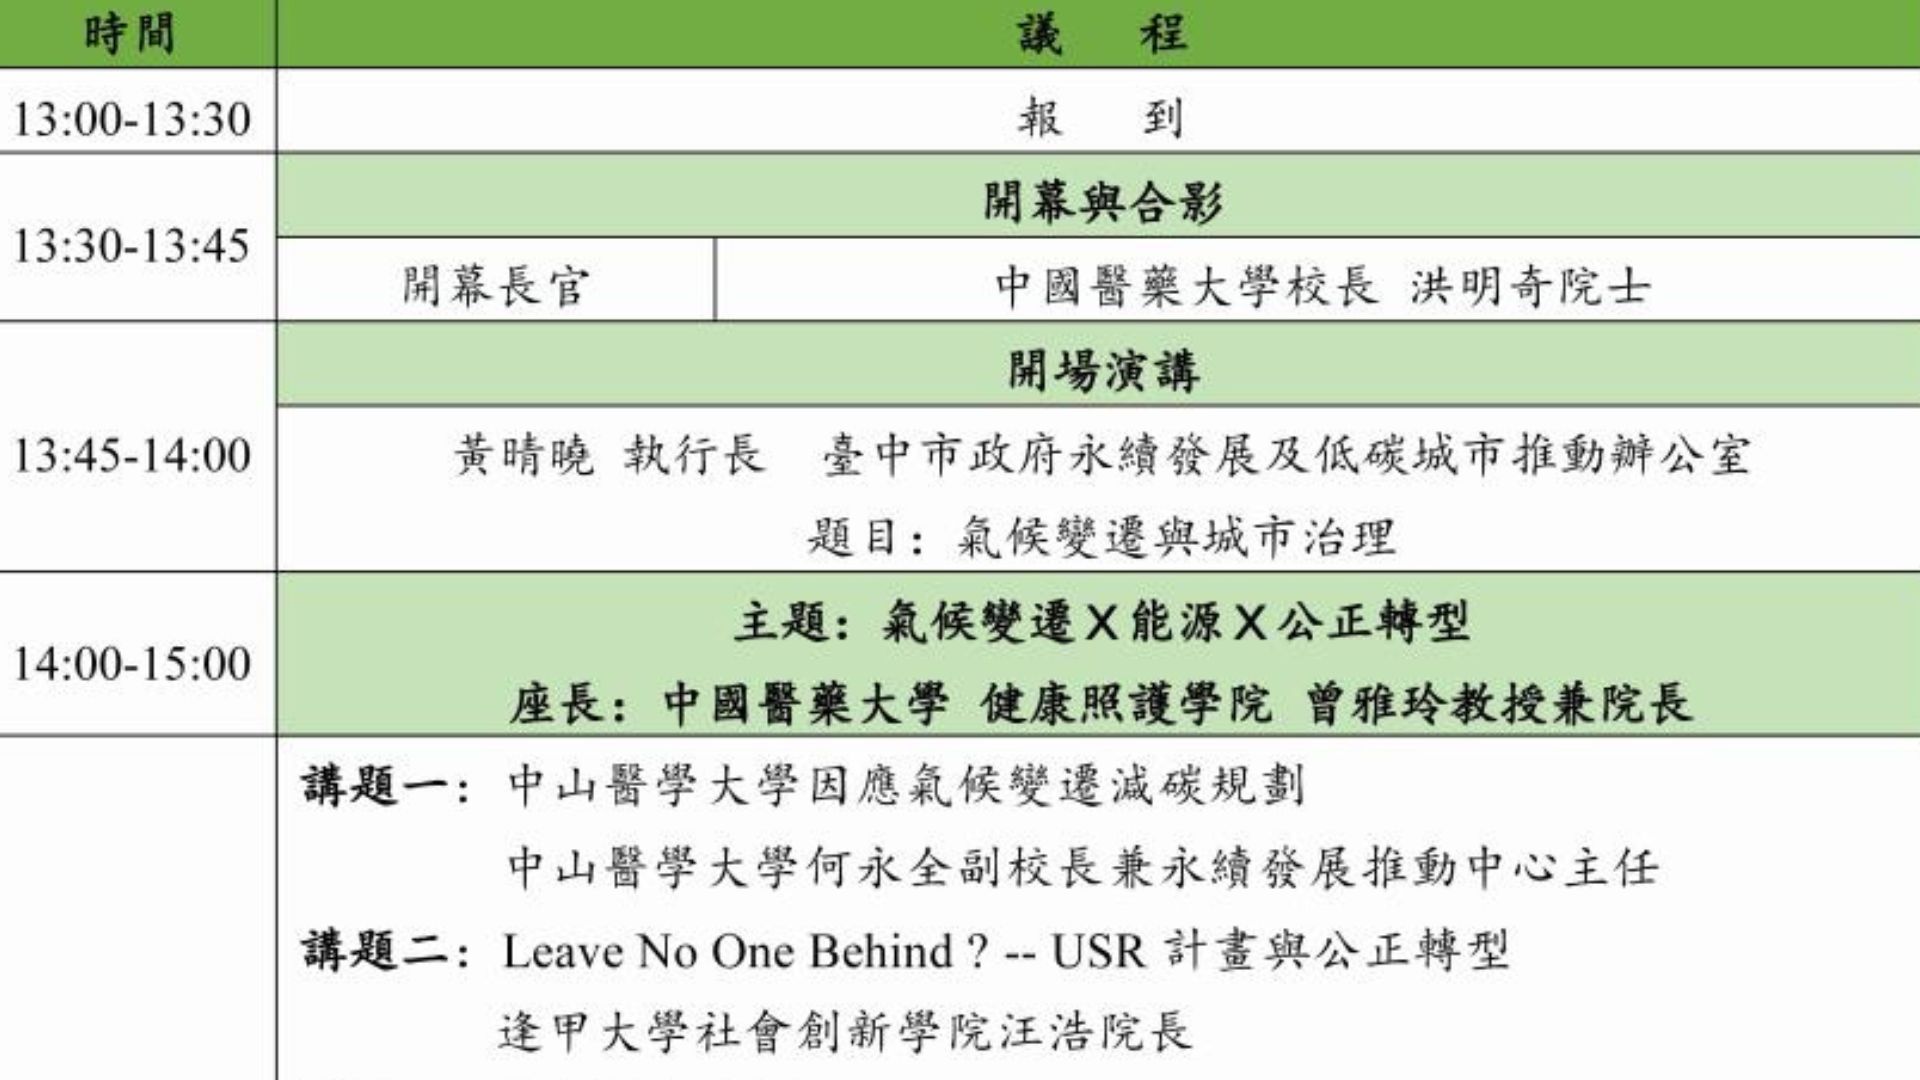 【論壇活動】中國醫藥大學於113/04/25辦理《氣候變遷與大學社會責任論壇》